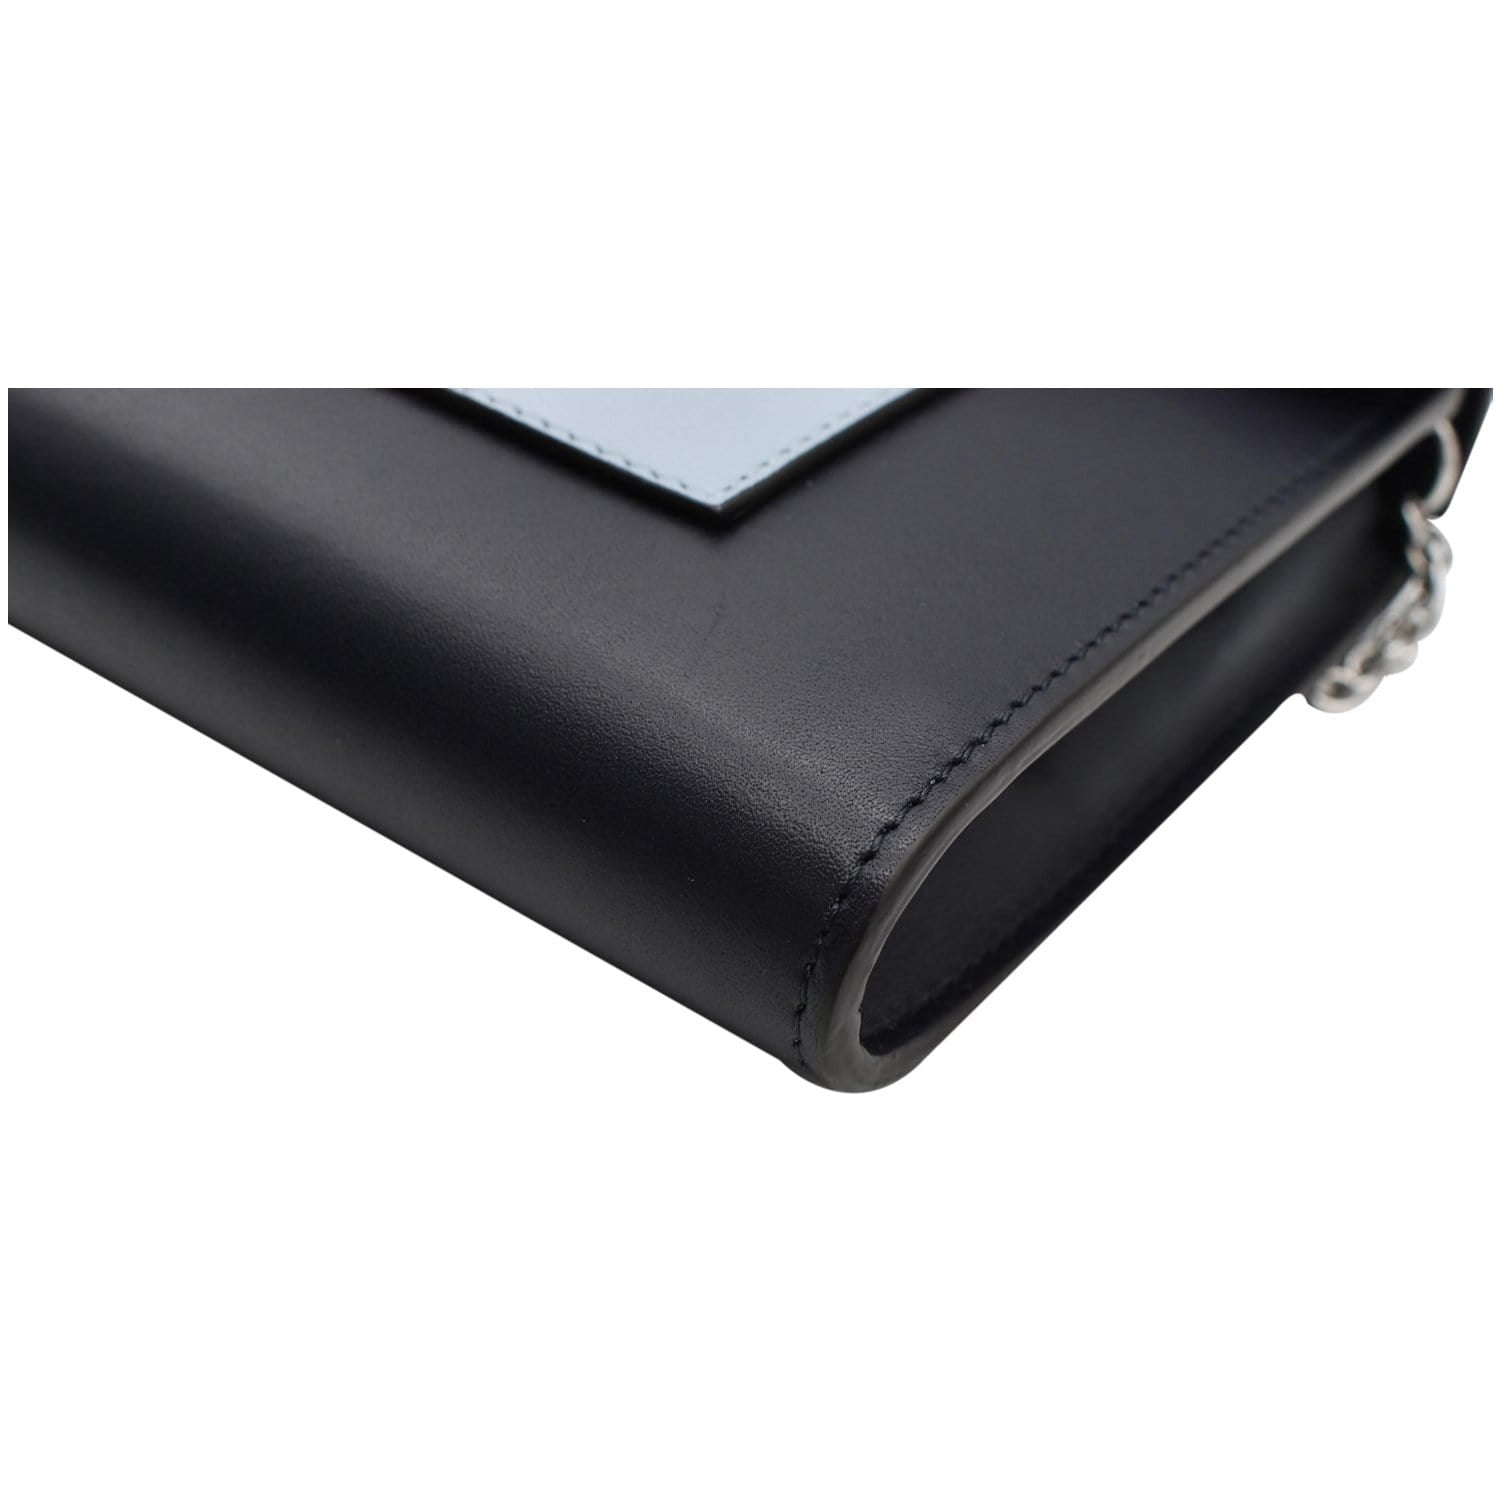 Celine Multicolor Leather Pocket Envelope Shoulder Bag